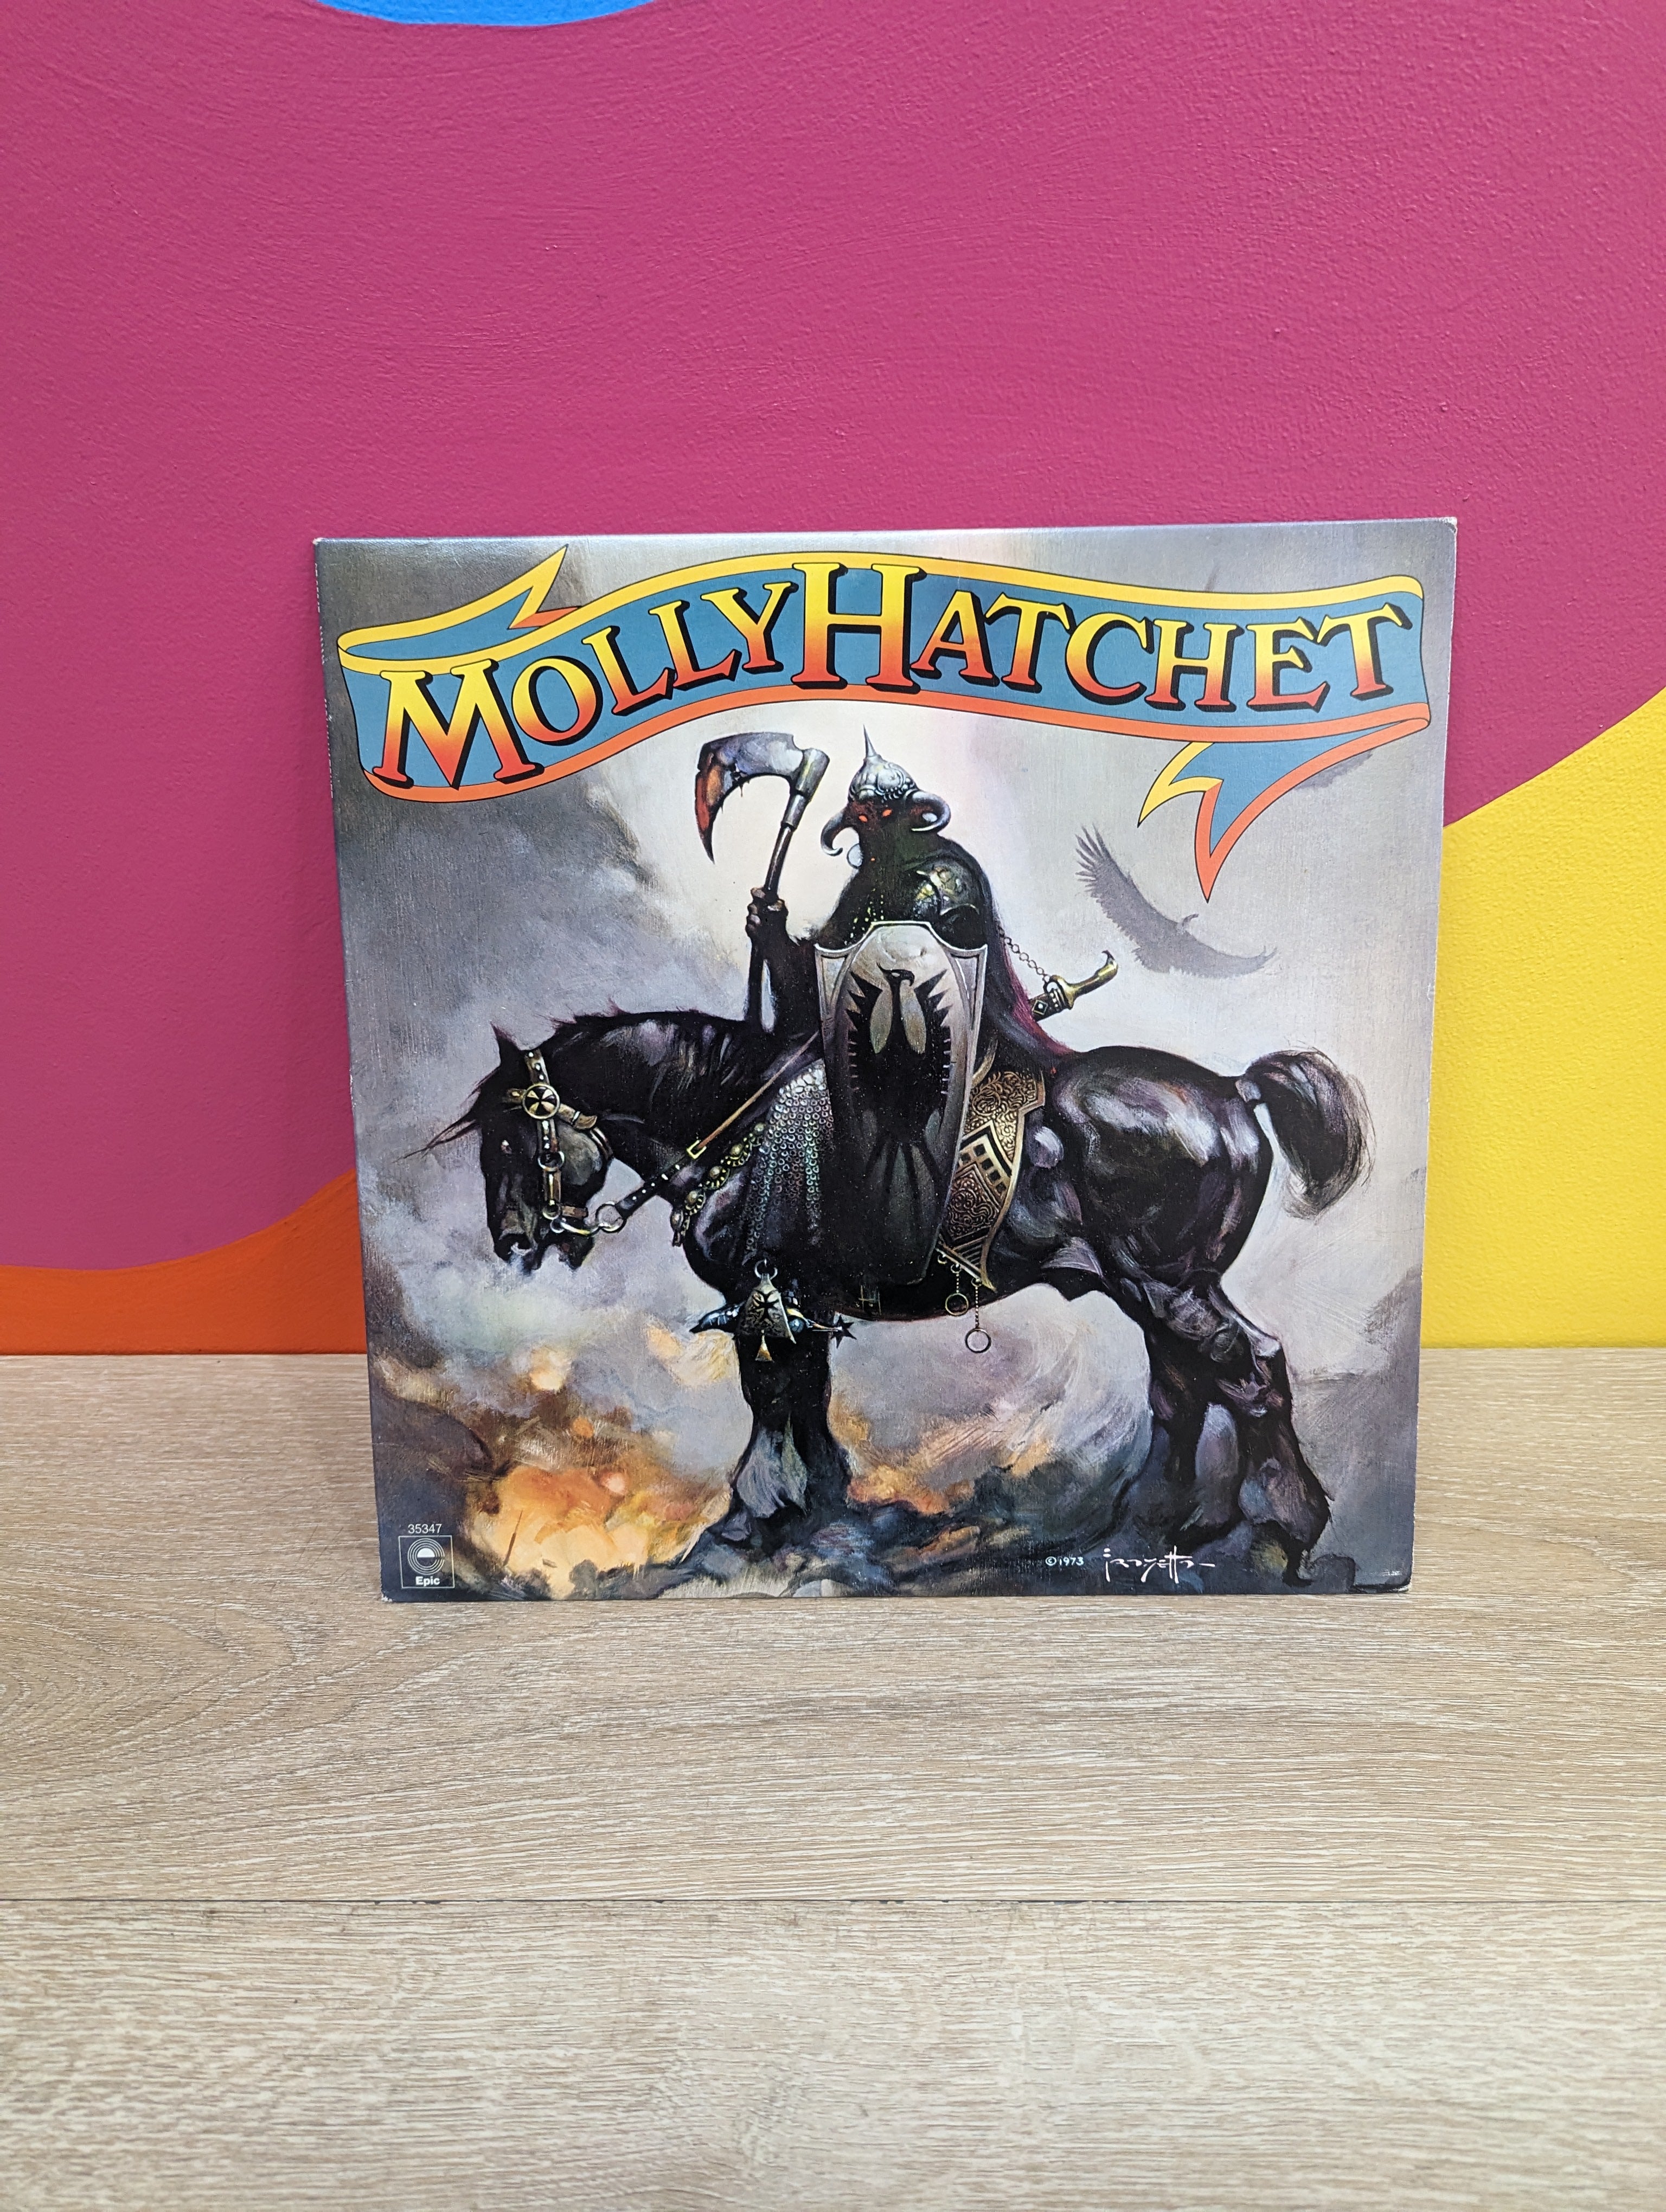 Molly Hatchet – Molly Hatchet Vinyl